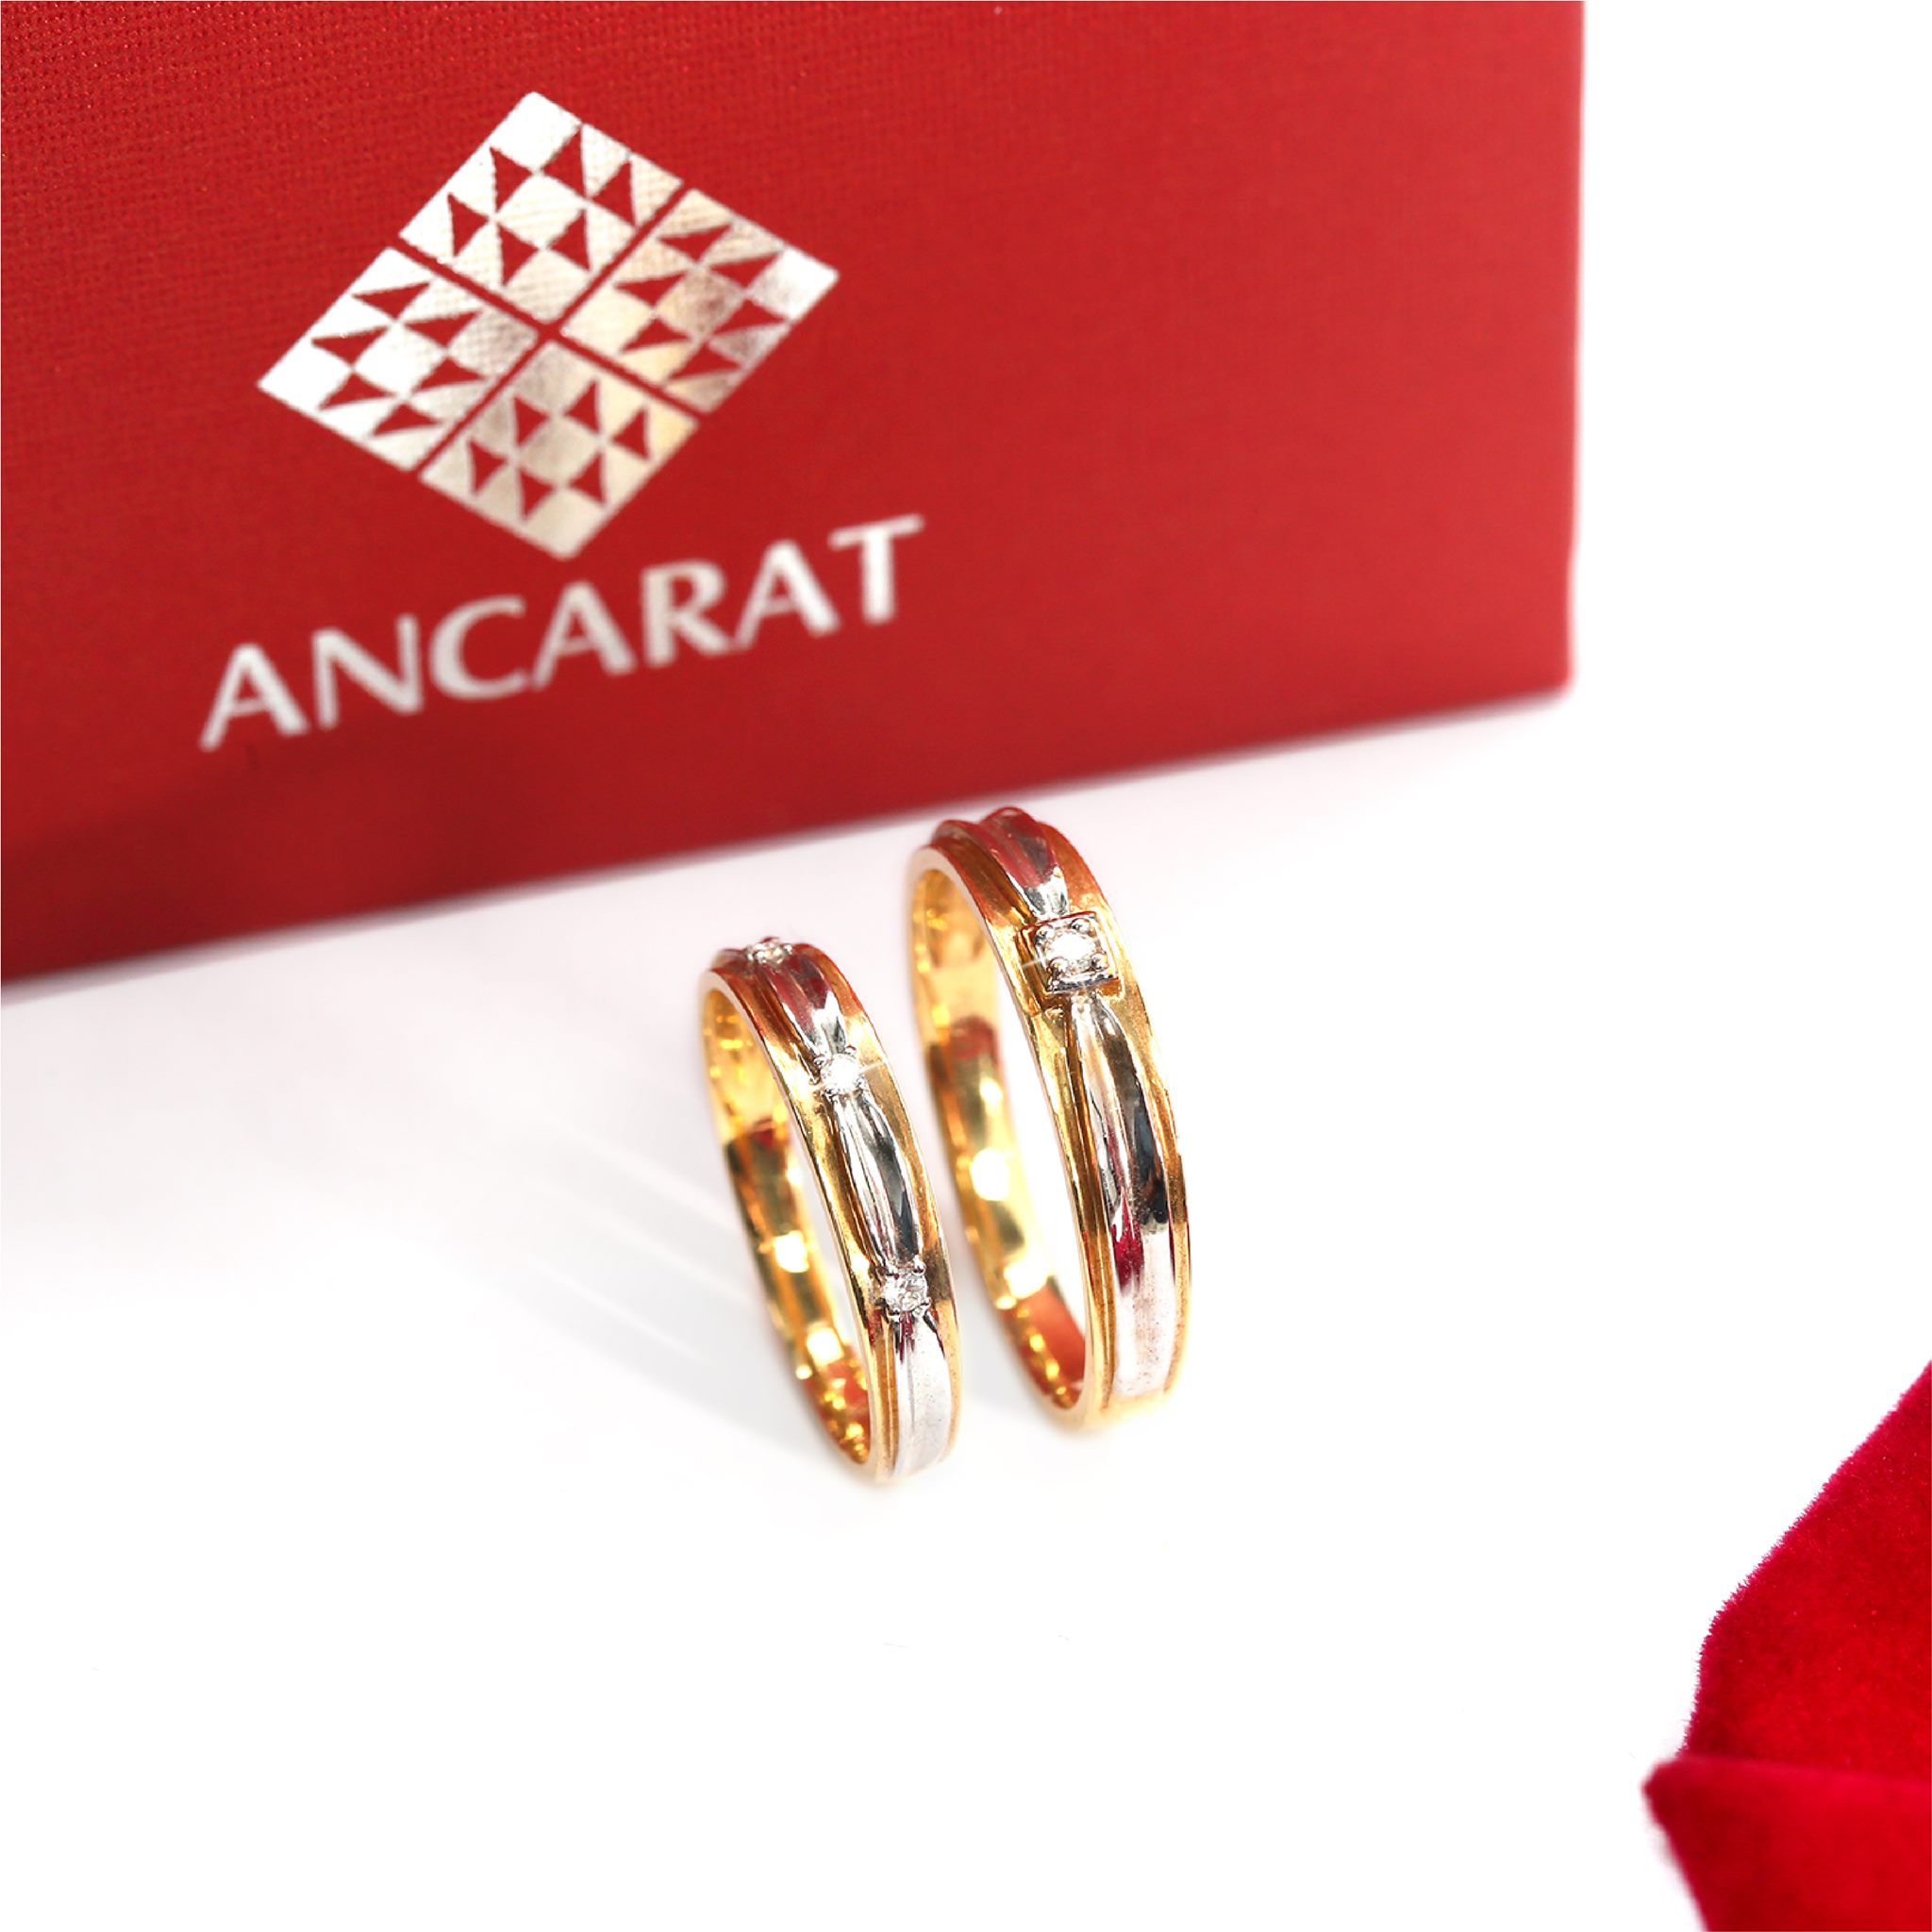 Ancarat Jewelry - Vàng Phong Thủy ảnh 3